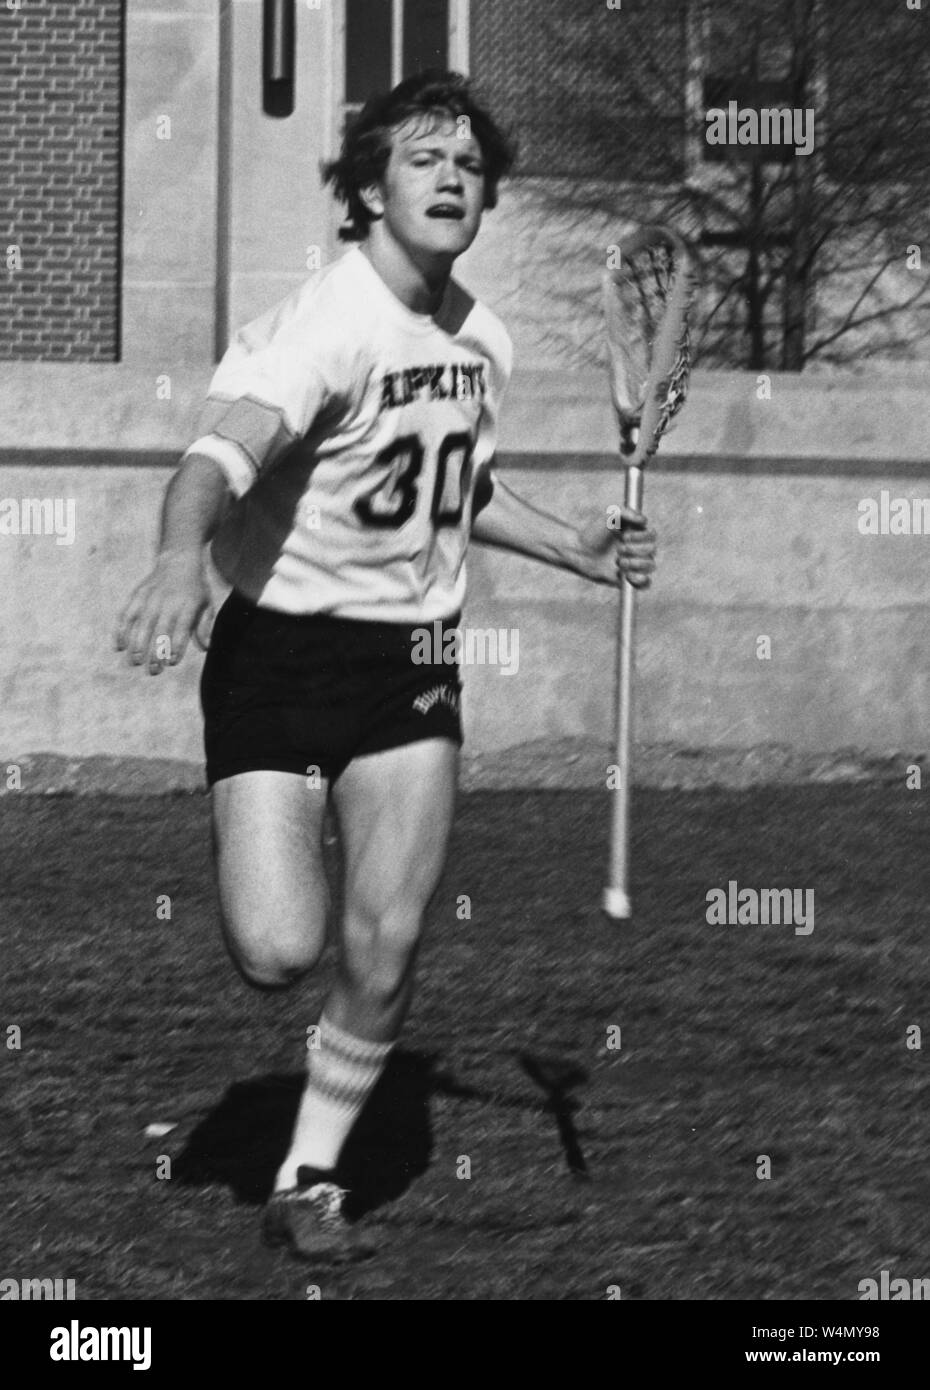 Johns Hopkins Lacrosse Spieler Jack Thomas, Hopkins kurze Hose und Jersey, mit seinem lacrosse Stock in der linken Hand auf dem Feld, mit einem ernsten Gesichtsausdruck, 1977. Historische Fotografien aus der Sammlung. () Stockfoto